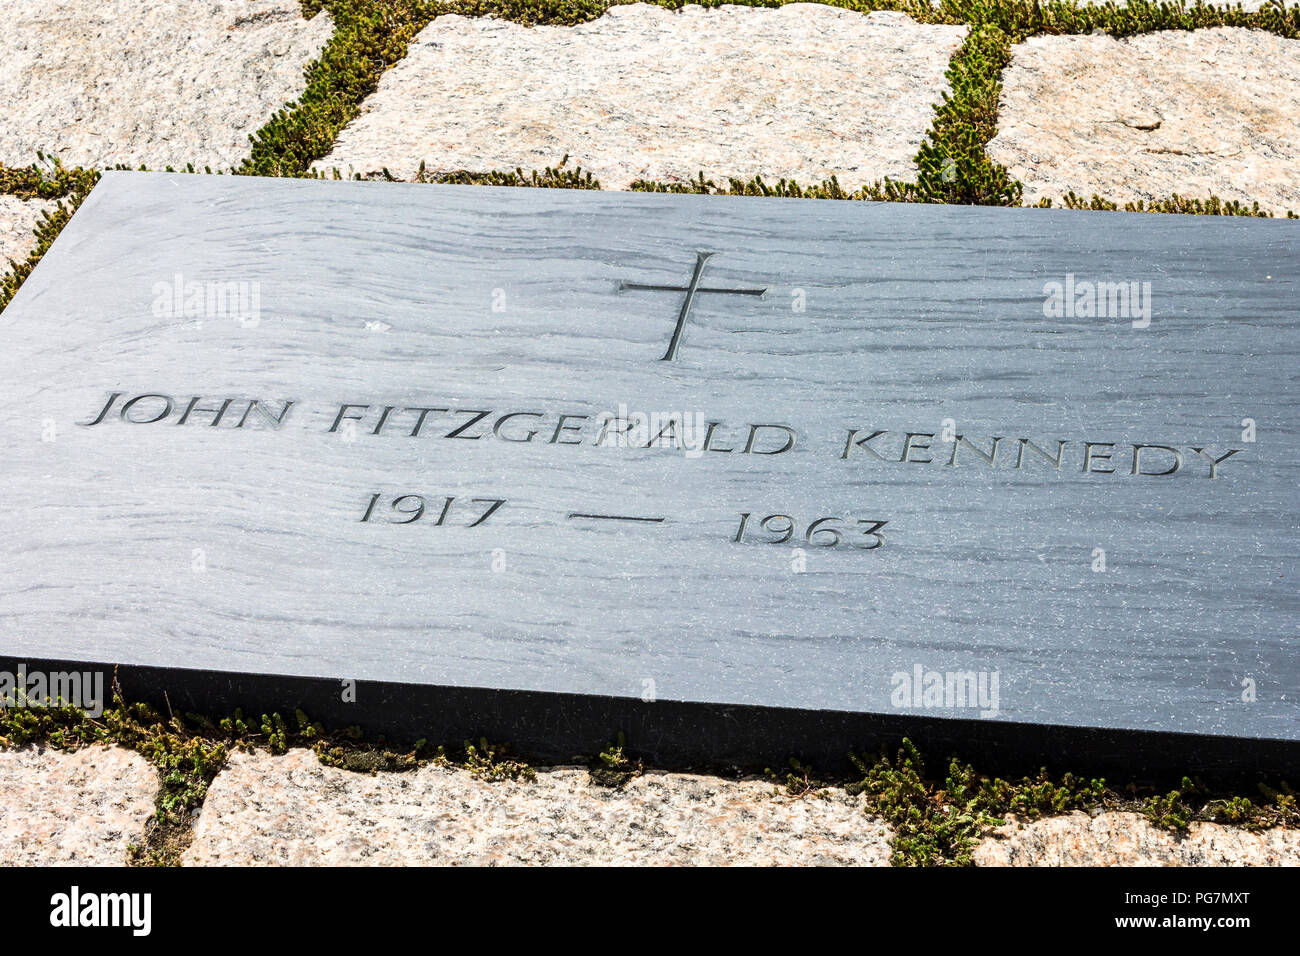 Arlington, Virginia. La tombe de John Fitzgerald Kennedy (JFK), 35e président des États-Unis, au cimetière national d'Arlington Banque D'Images